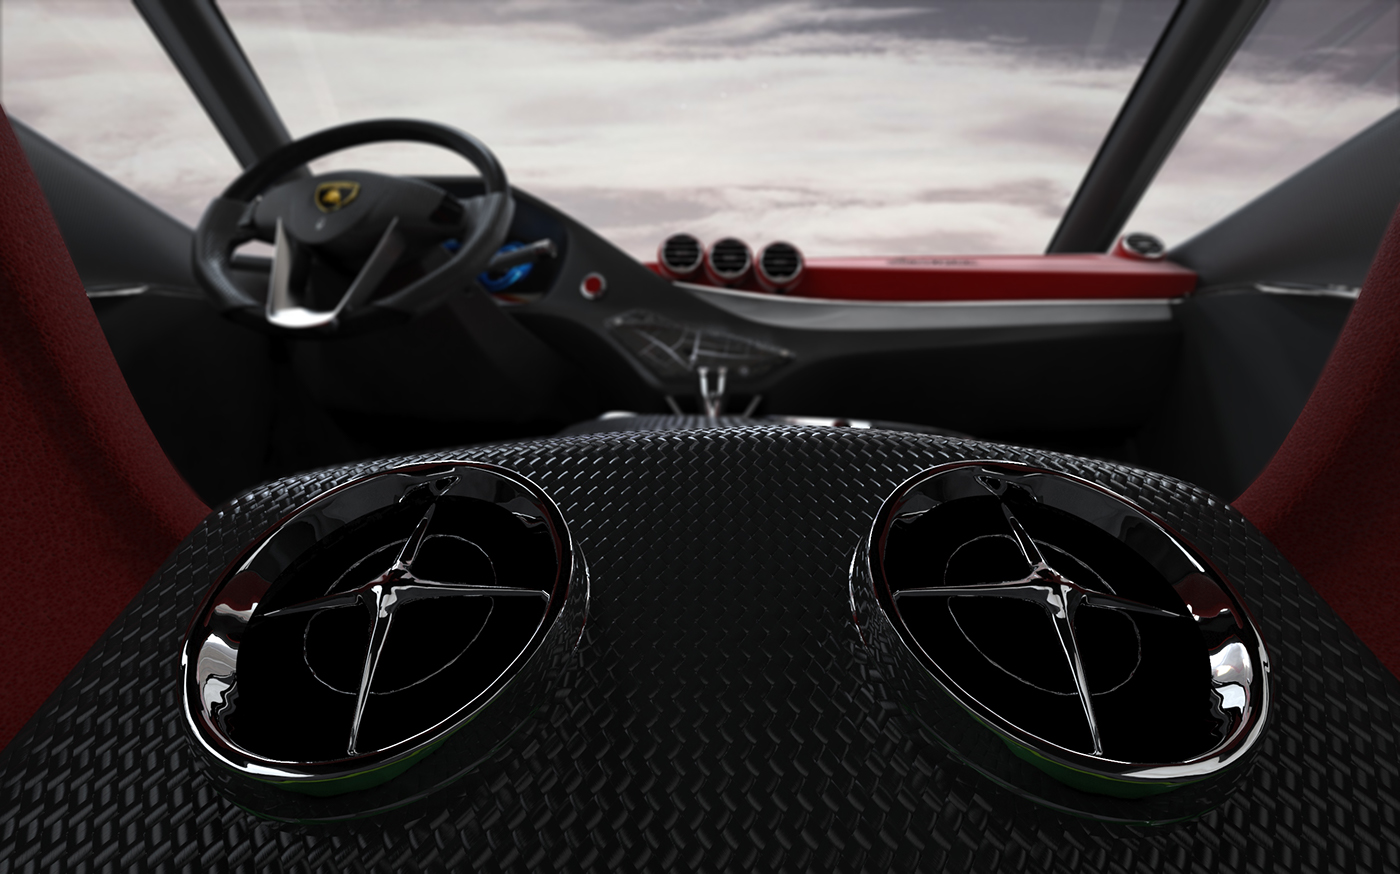 Lamborghini Edroid interior design on Behance